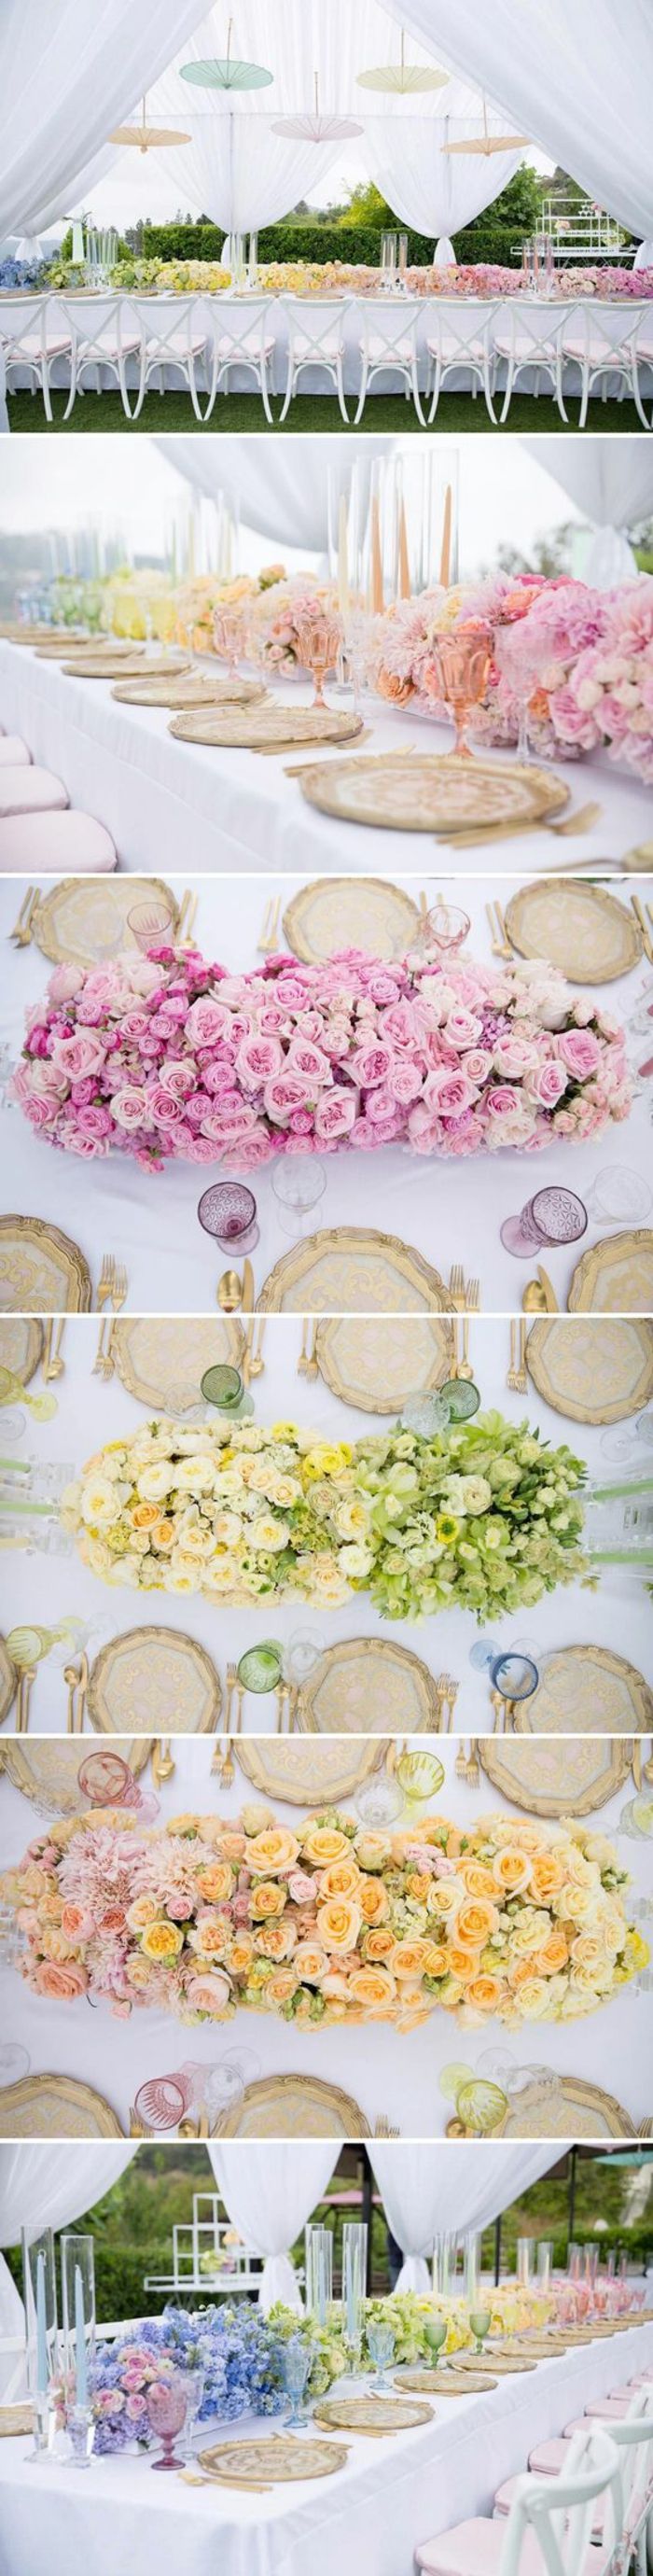 Odlikovanja, poročna dekoracija, dolga miza, okrašena s cvetjem različnih barv